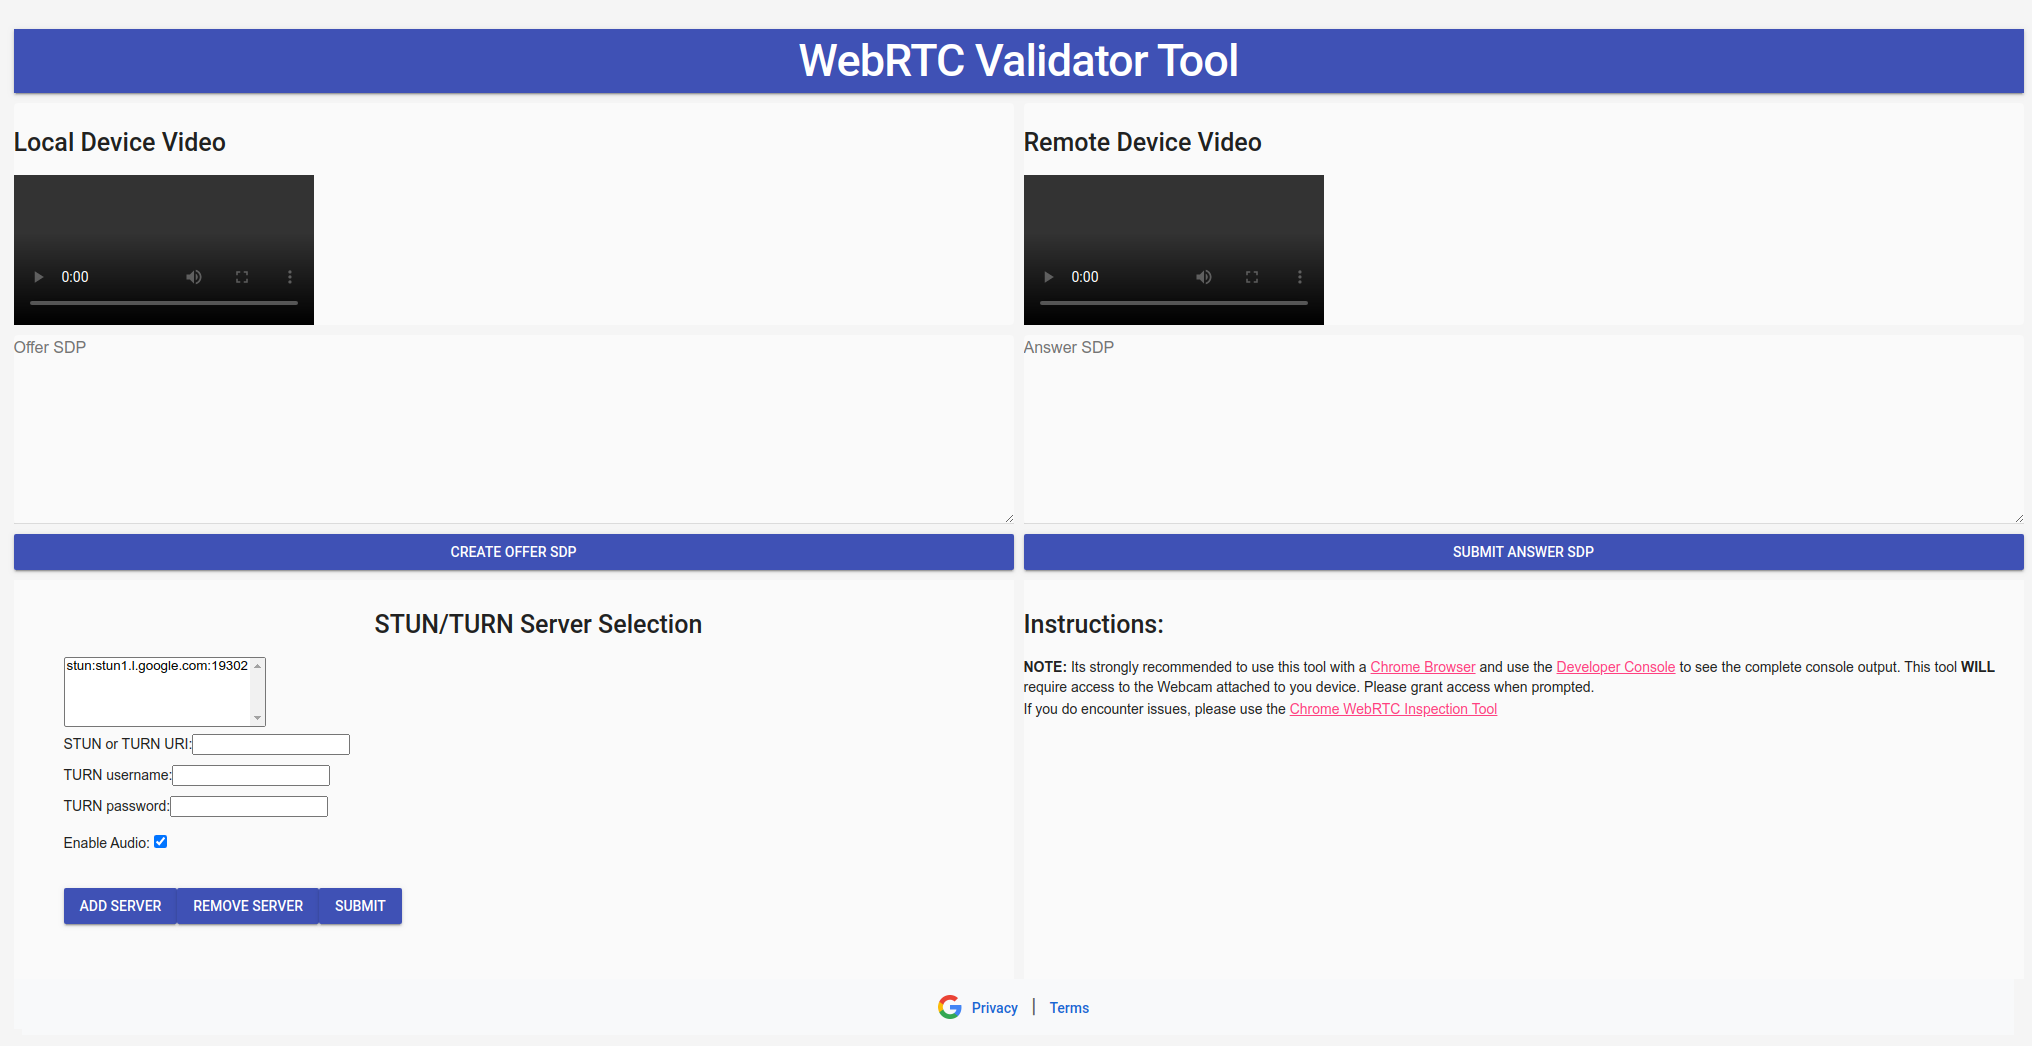 Imagen de descripción general de la herramienta Validador de WebRTC.